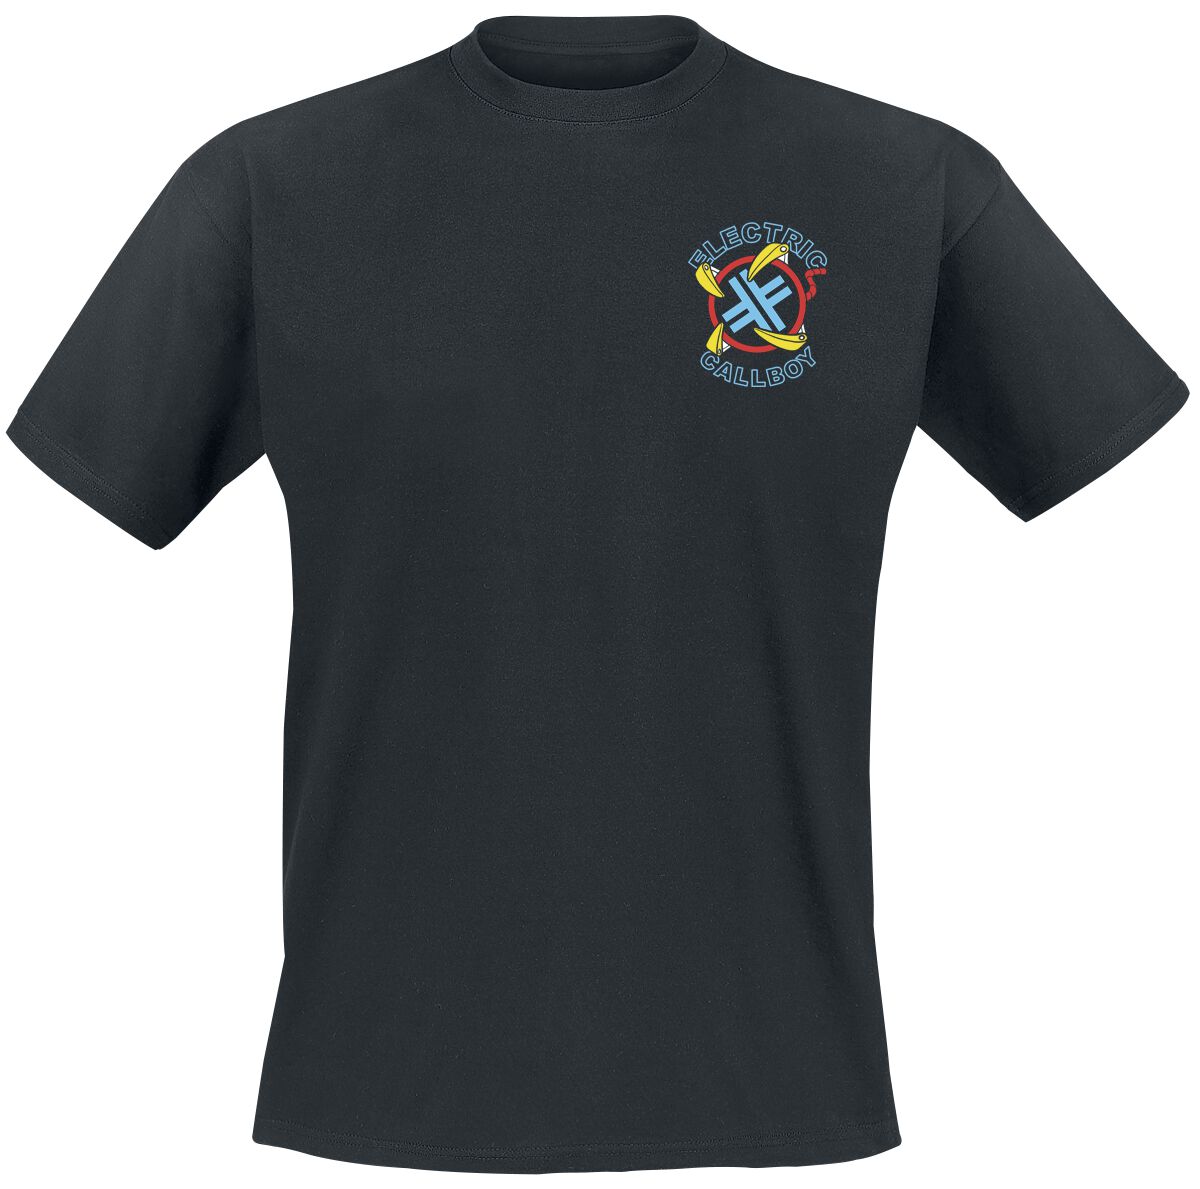 Electric Callboy T-Shirt - Let`s Play - S bis 3XL - für Männer - Größe XXL - schwarz  - Lizenziertes Merchandise!